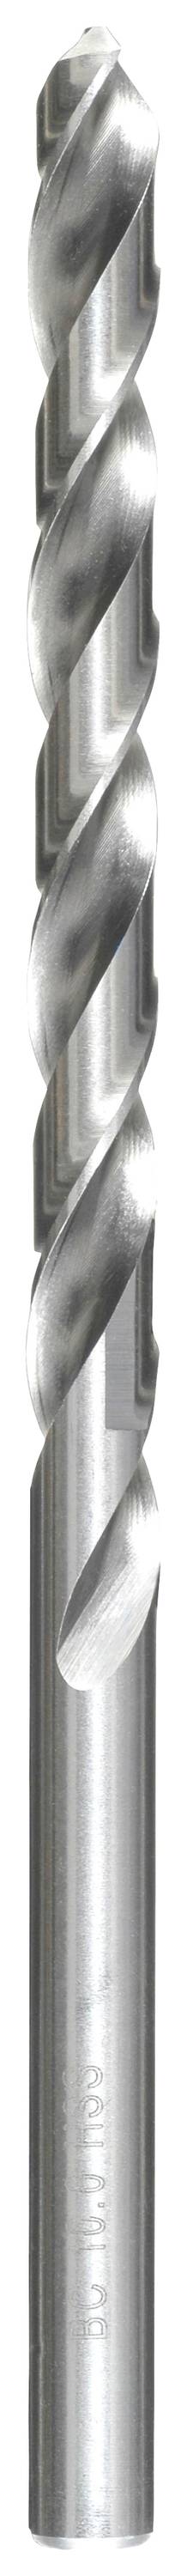 KWB 217055 HSS Spiralbohrer 1 Stück 5.5 mm Gesamtlänge 139 mm DIN 340 Zahnkranzbohrfutter 1 St.